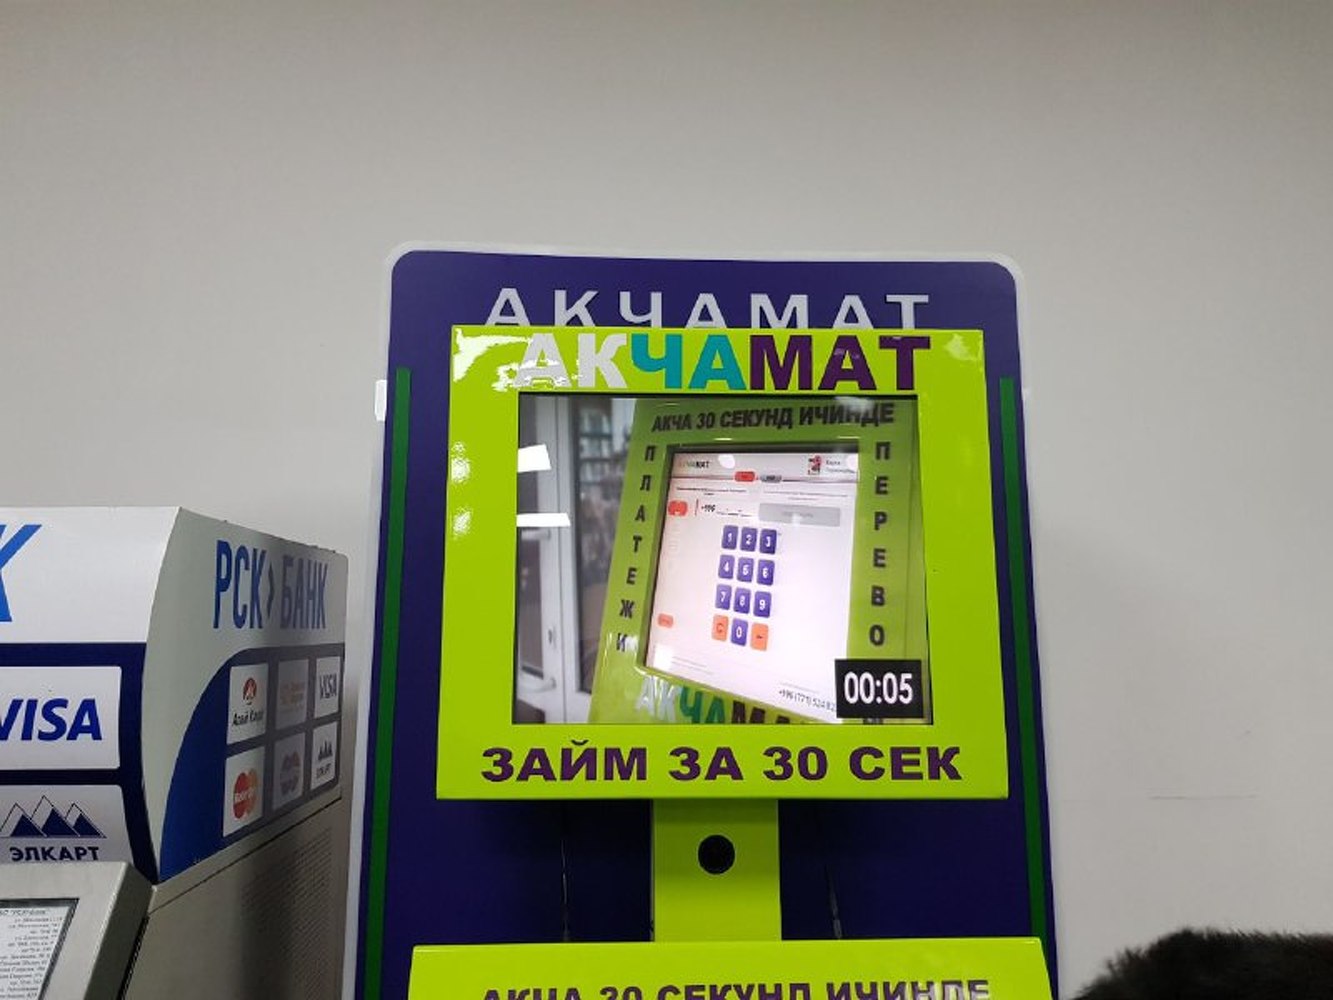 Нацбанк посоветовал торговым центрам не устанавливать терминалы «Акчамат» — Today.kg